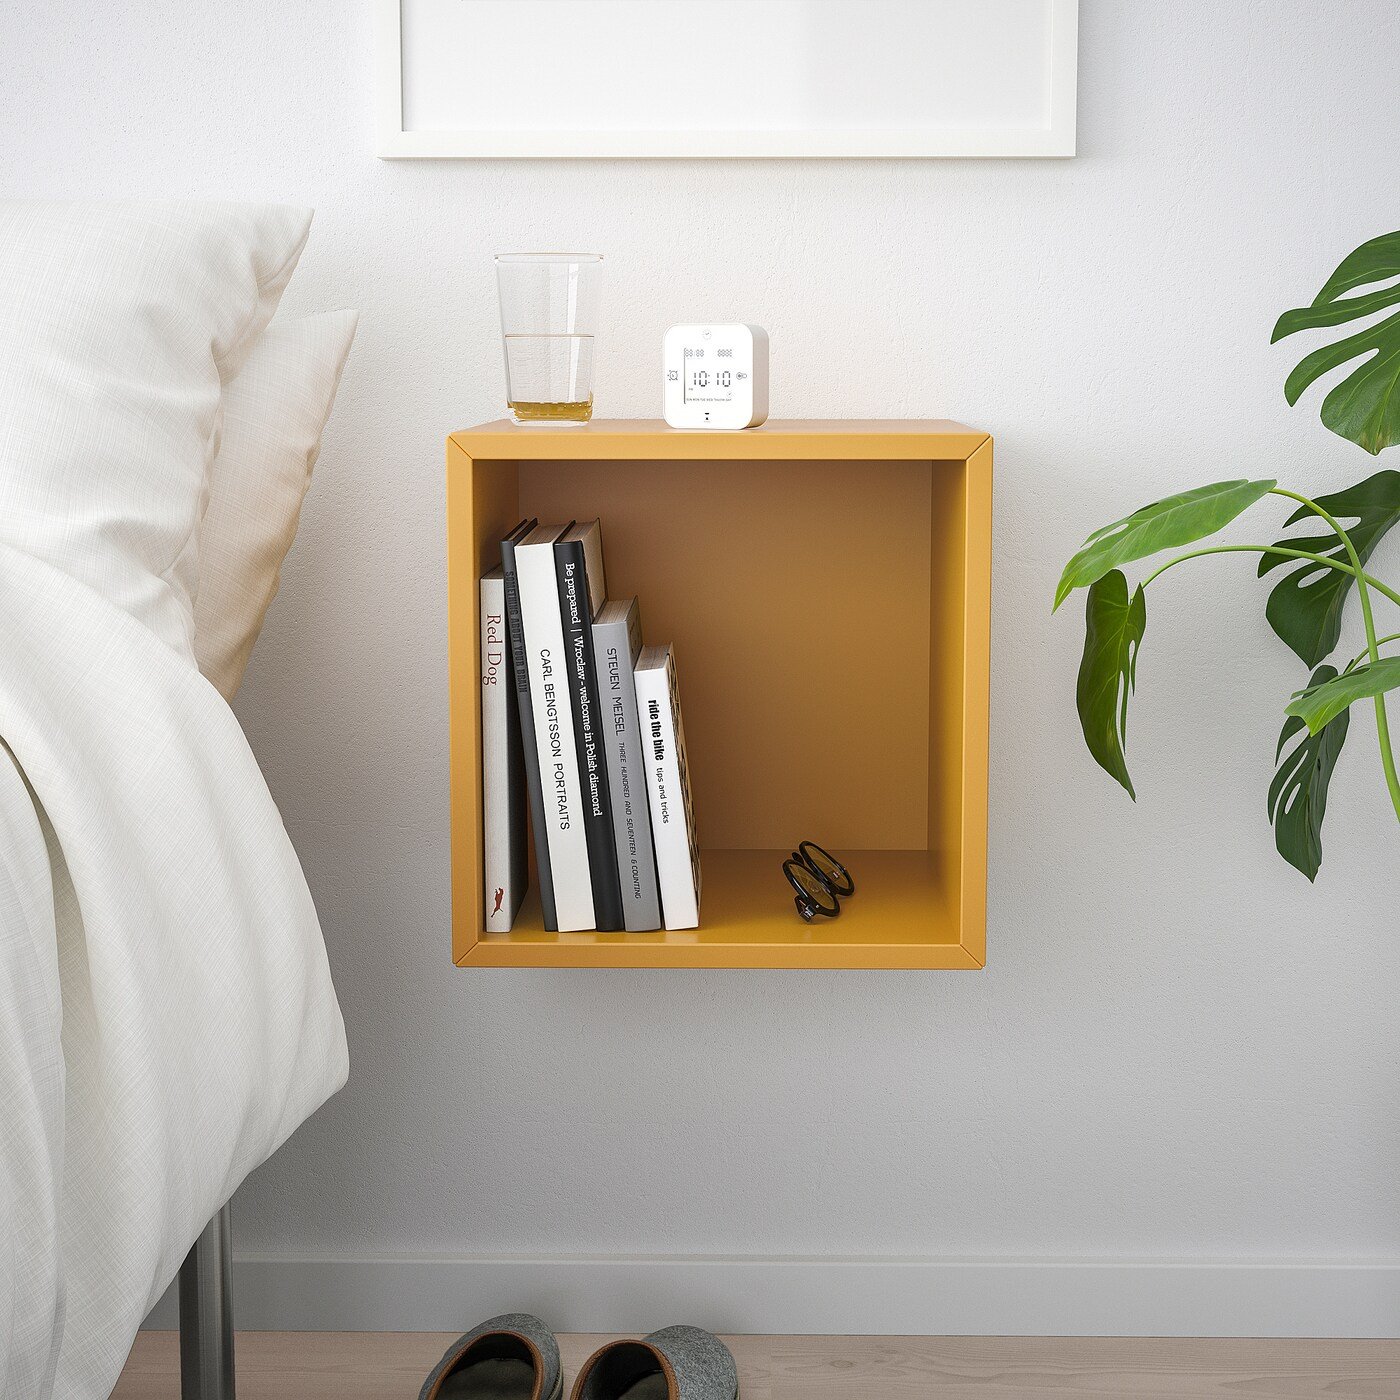 Estanteri´as modulares Ecket de Ikea para pisos pequen~os. Una solución cuadrada para cualquier sitio